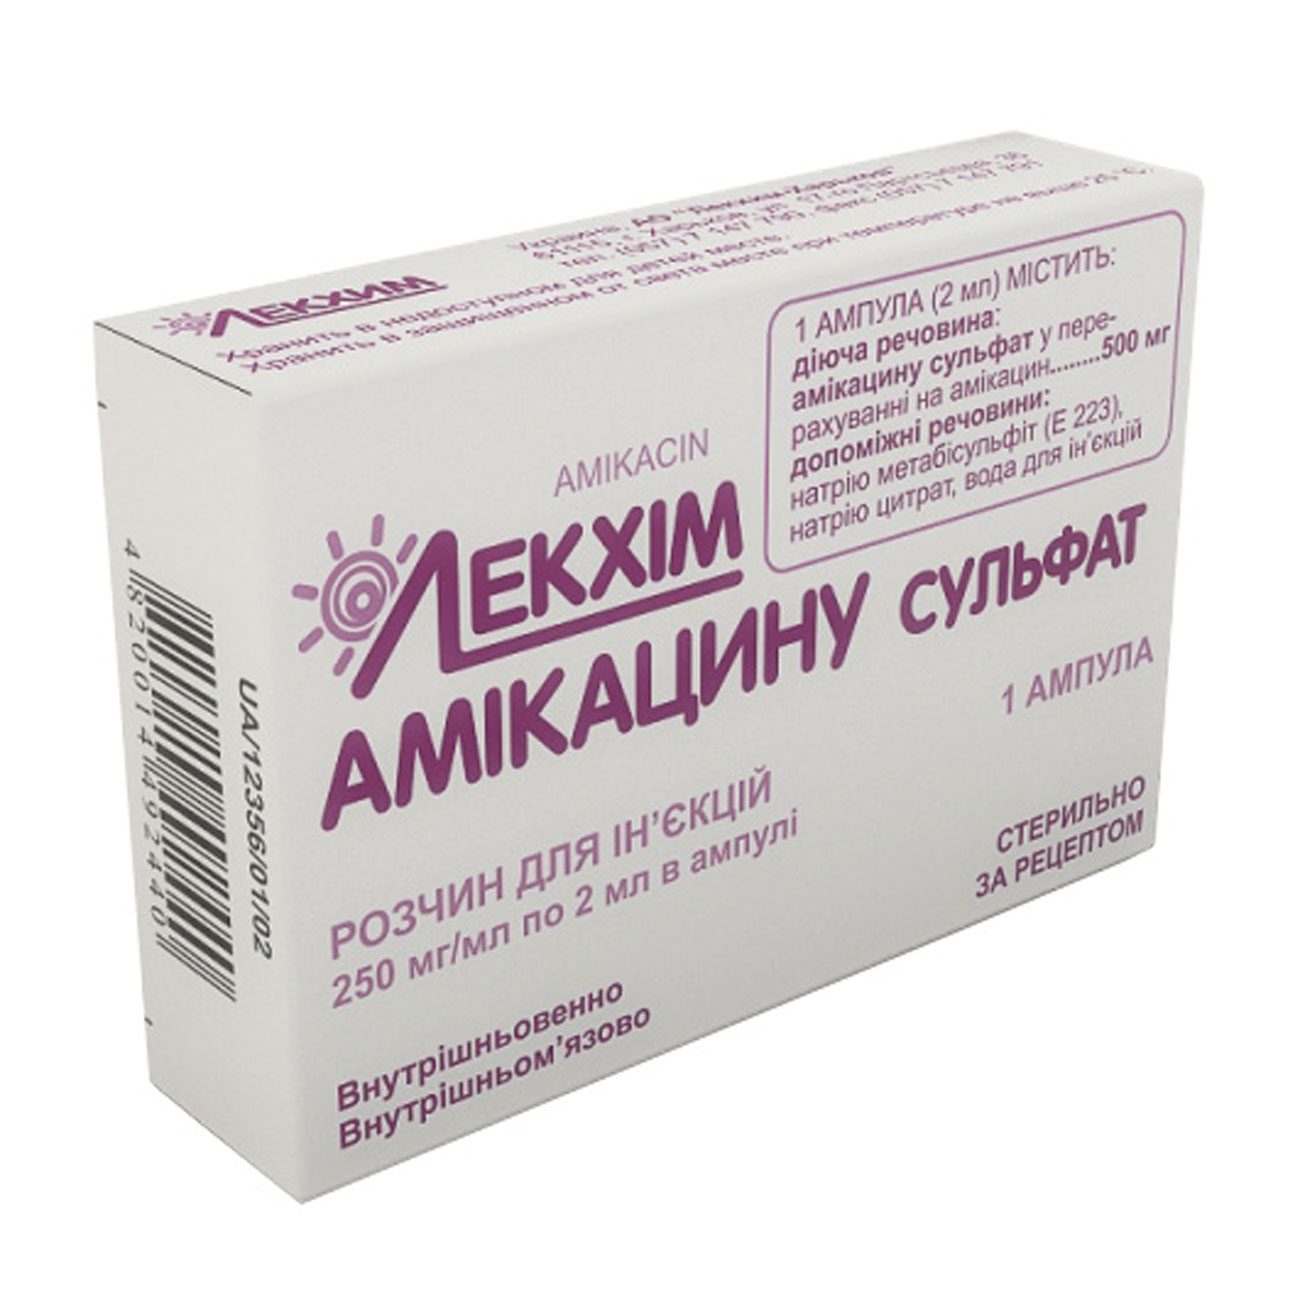 Амикацин - инструкция, рецепт, цена и аналоги лекарственного средства